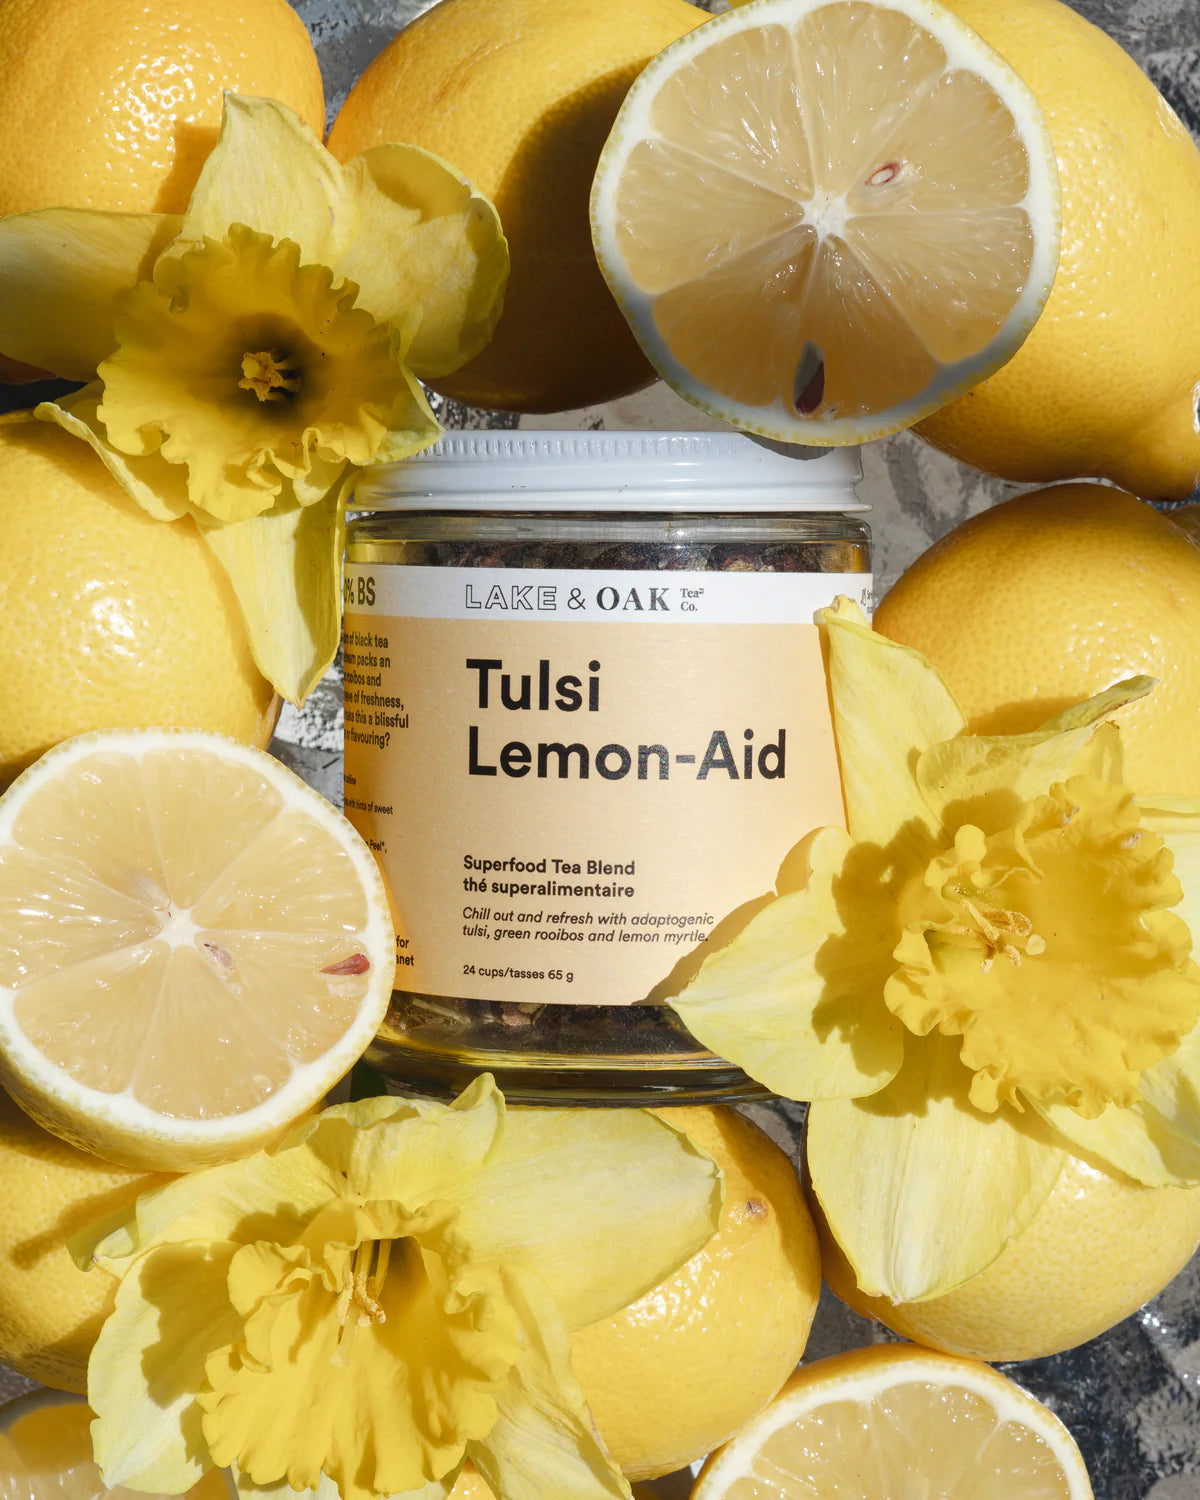 Tulsi Lemon-Aid - Loose Leaf Tea - 24 Cups